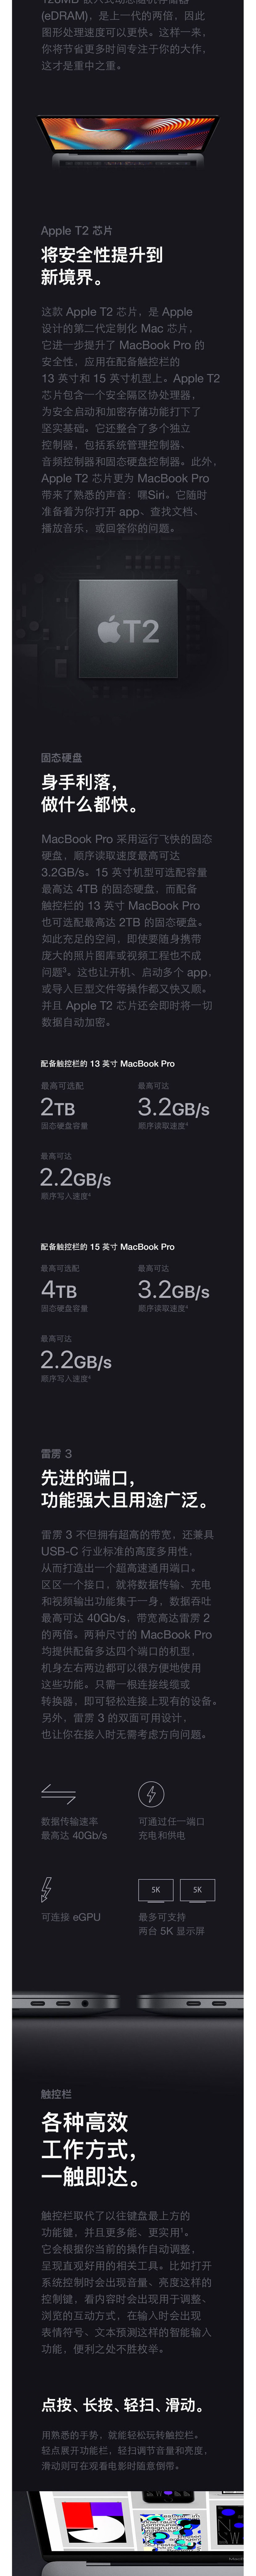 2018新款 Apple MacBook Pro 15.4英寸笔记本电脑  512G固态硬盘